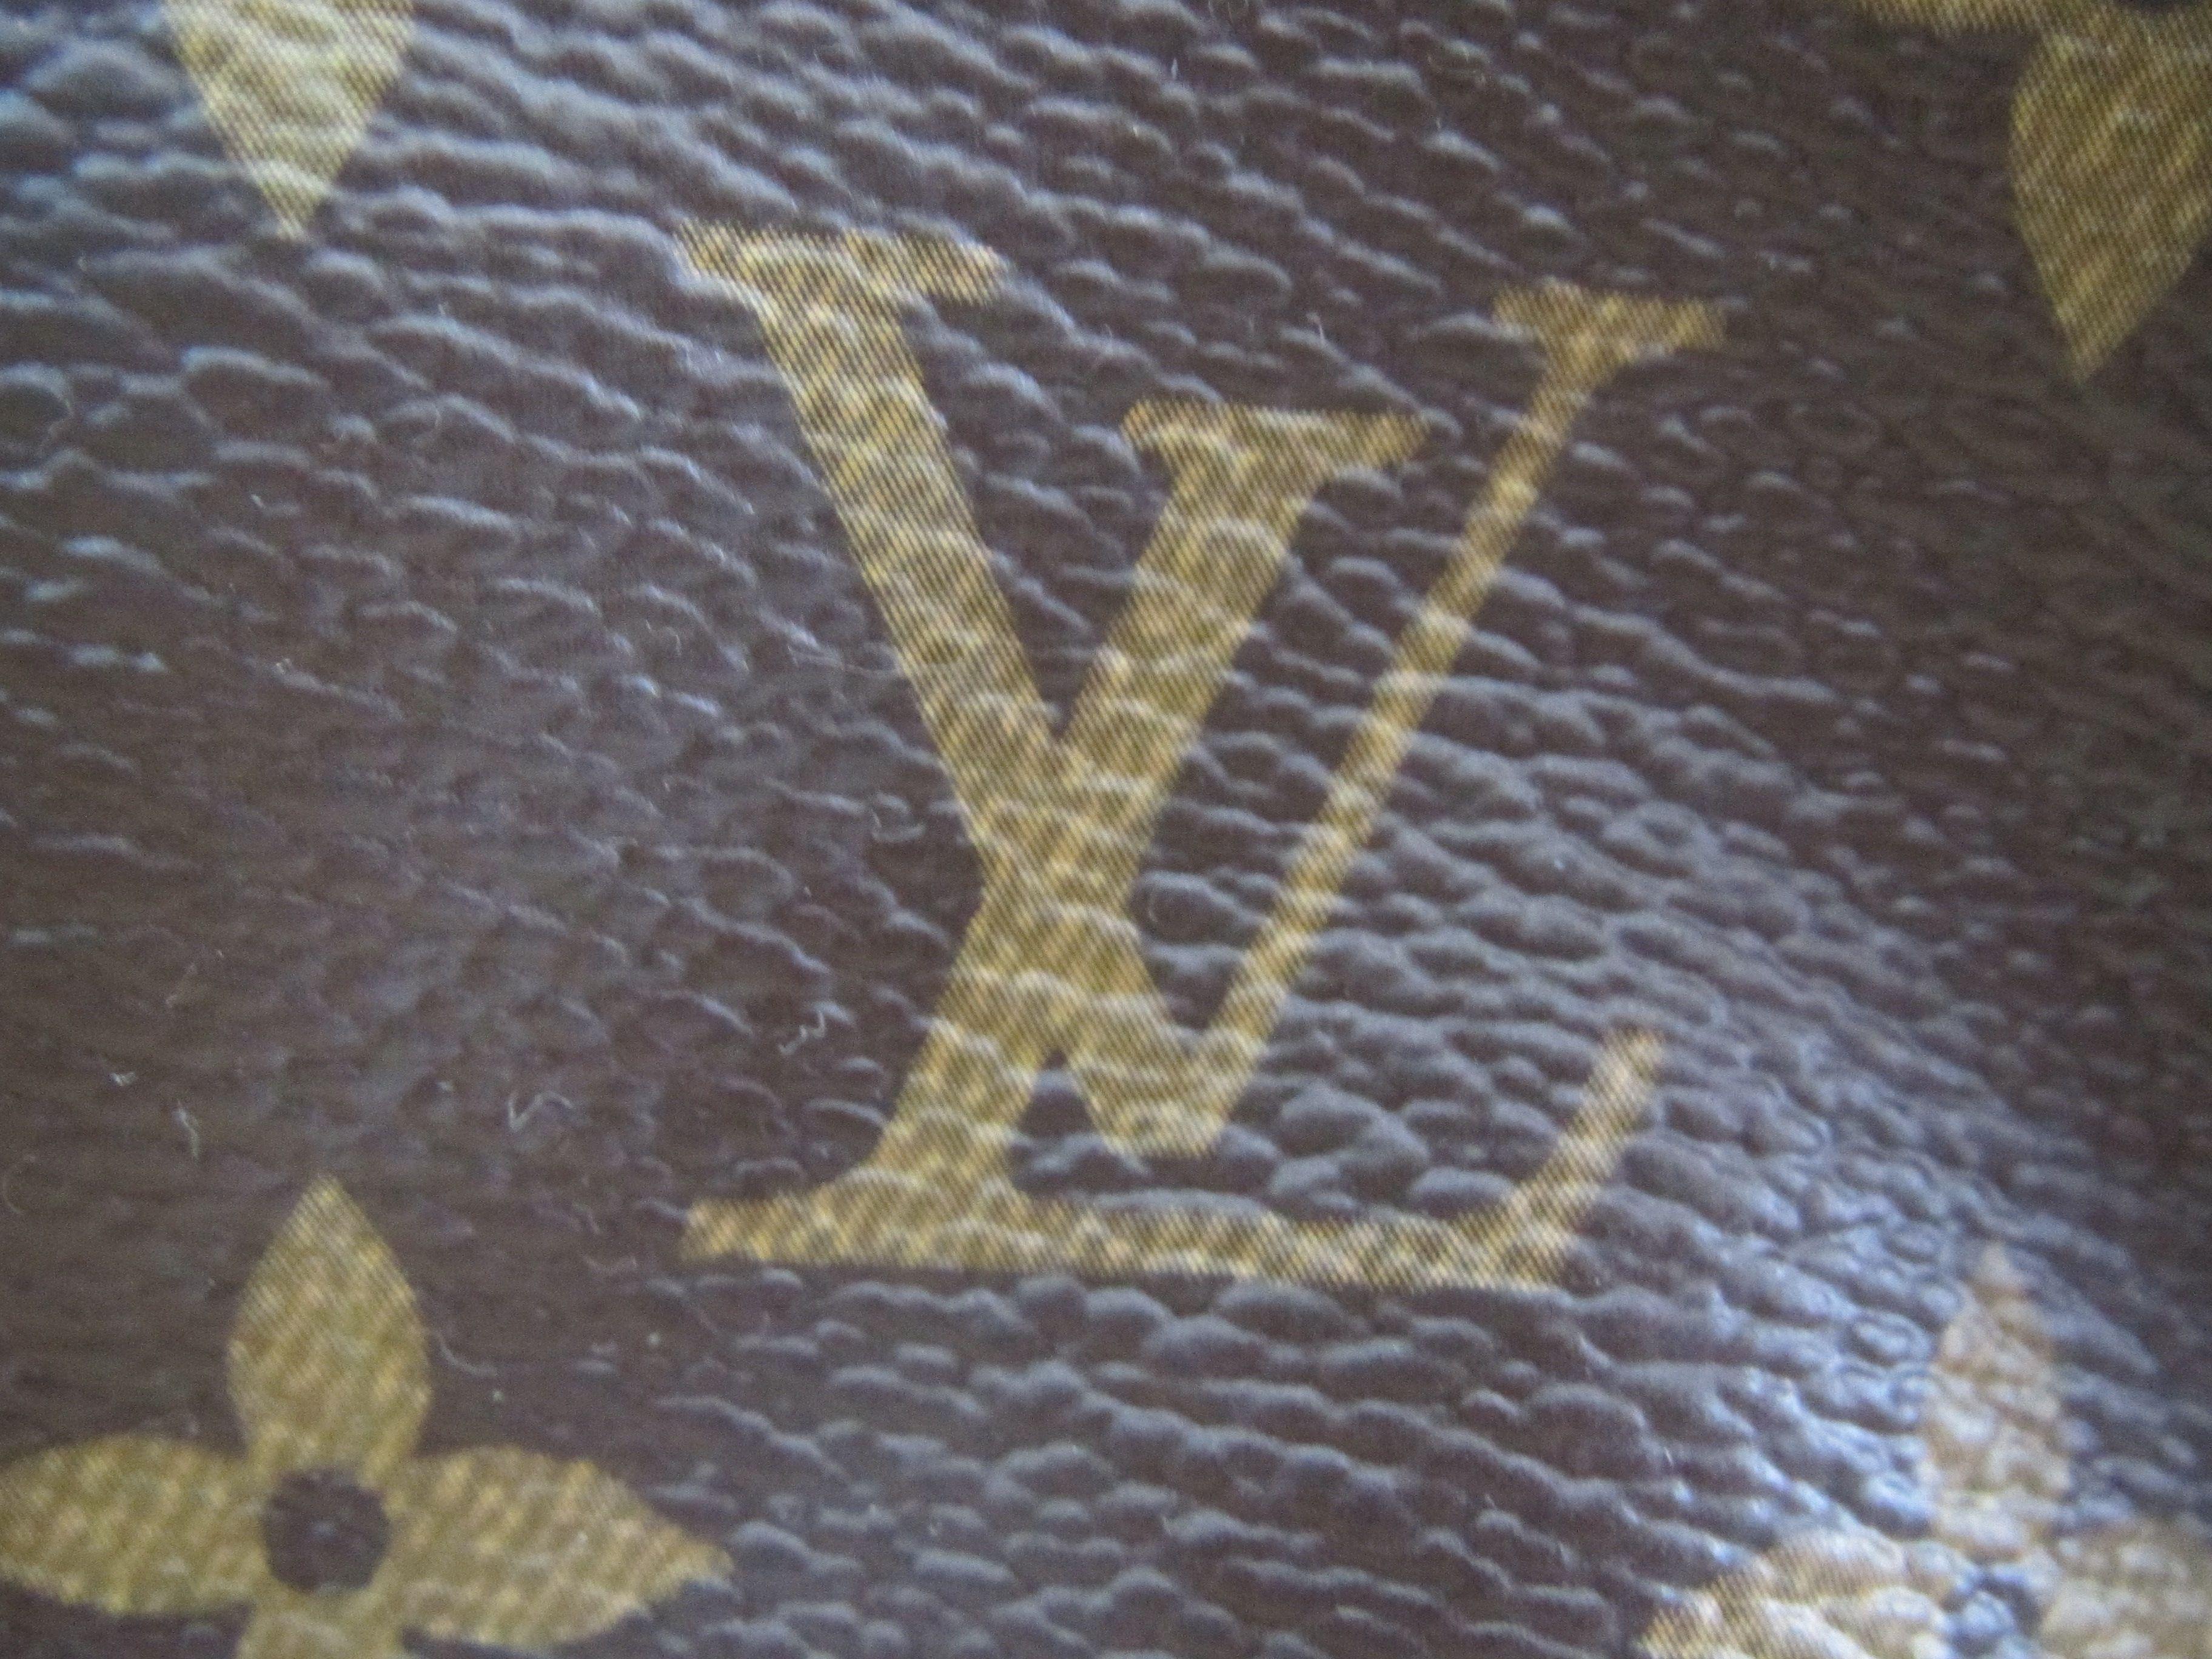 LV Logo - Ways to Spot Fake Louis Vuitton Purses